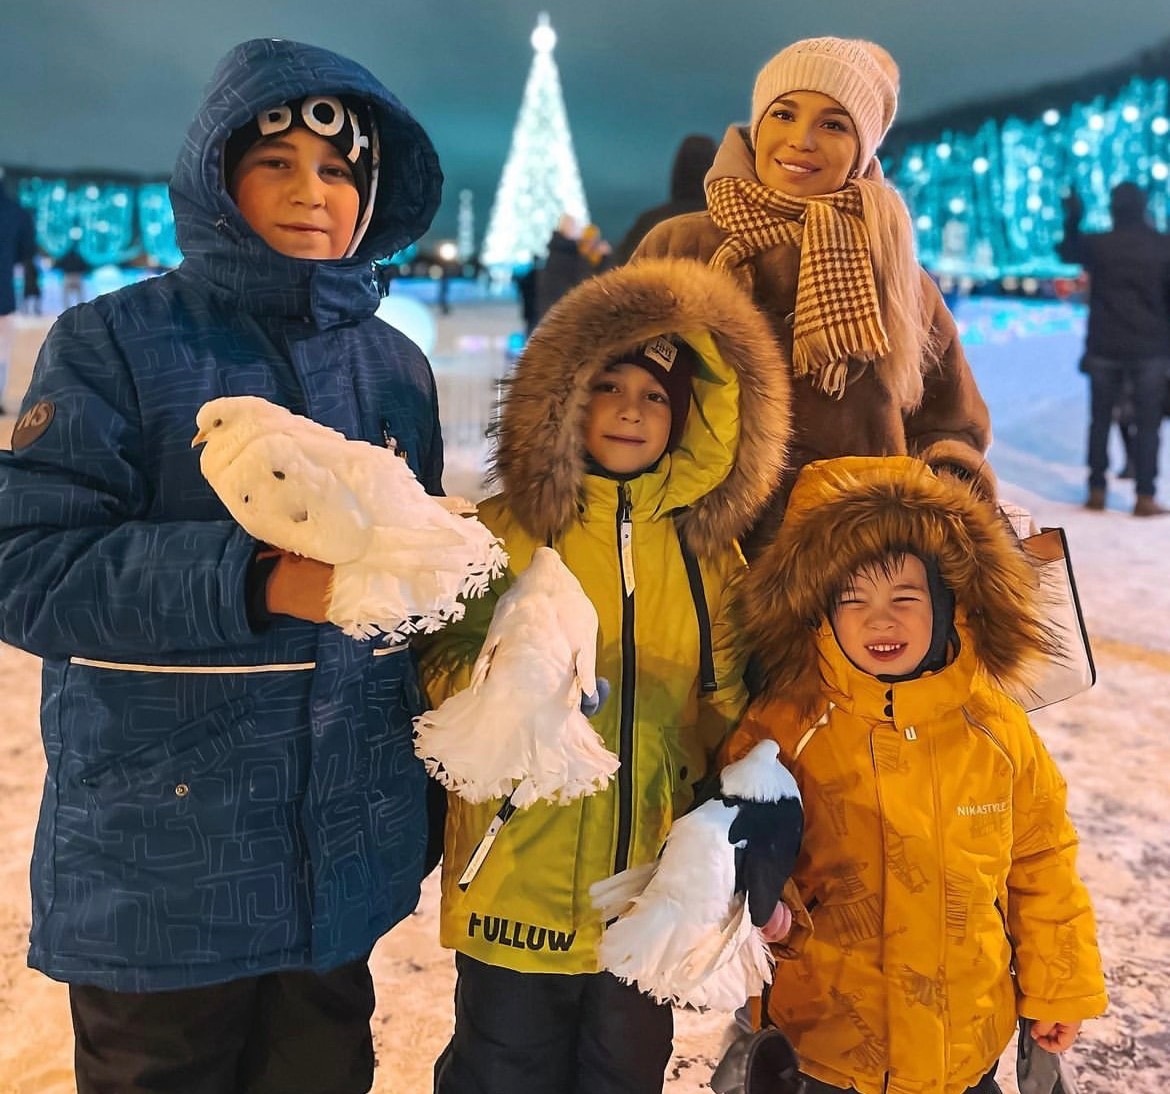 "Прислали мне матерные сообщения": Тигран Салибеков объяснил, почему не общается с детьми